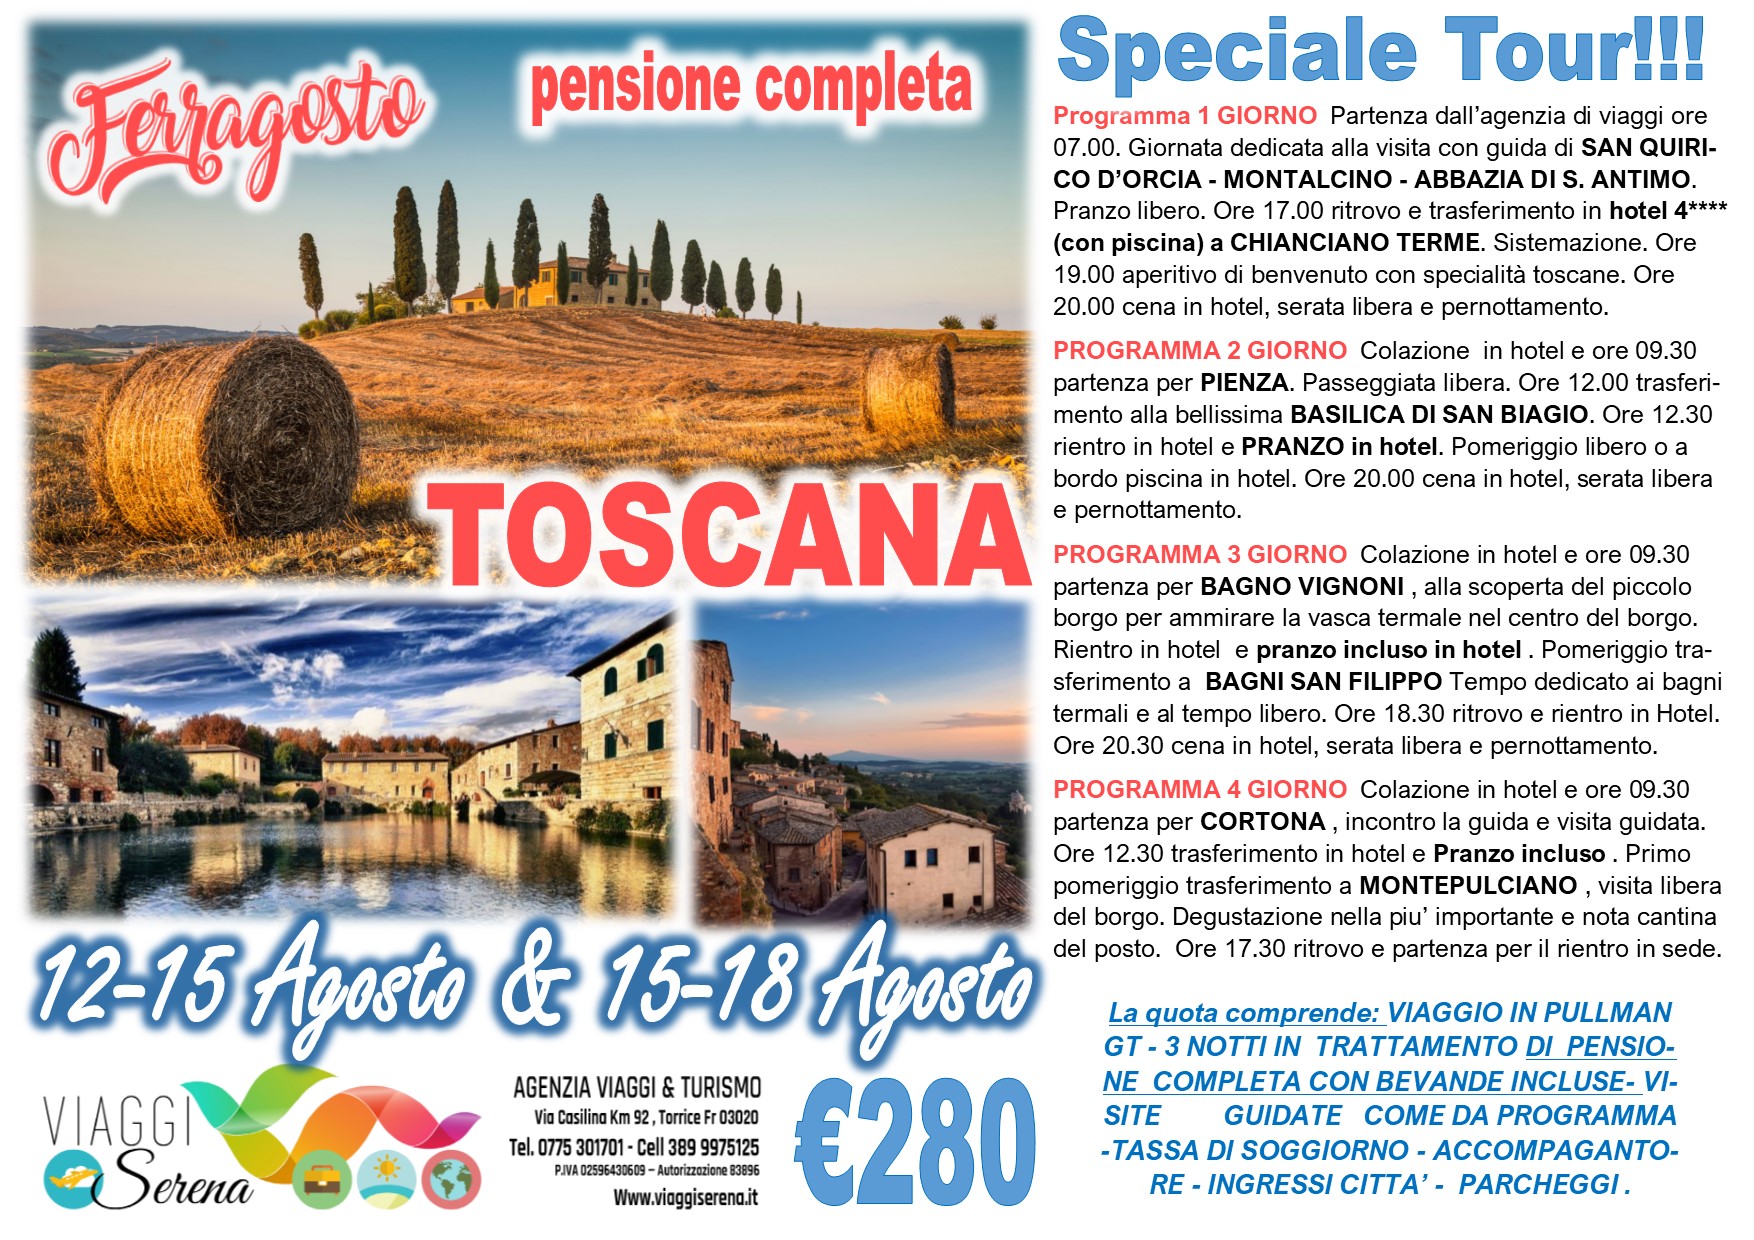 Viaggi di Gruppo: FERRAGOSTO TOSCANA “San Quirico, Pienza, Cortona & Montepulciano” 15-18 Agosto €280,00